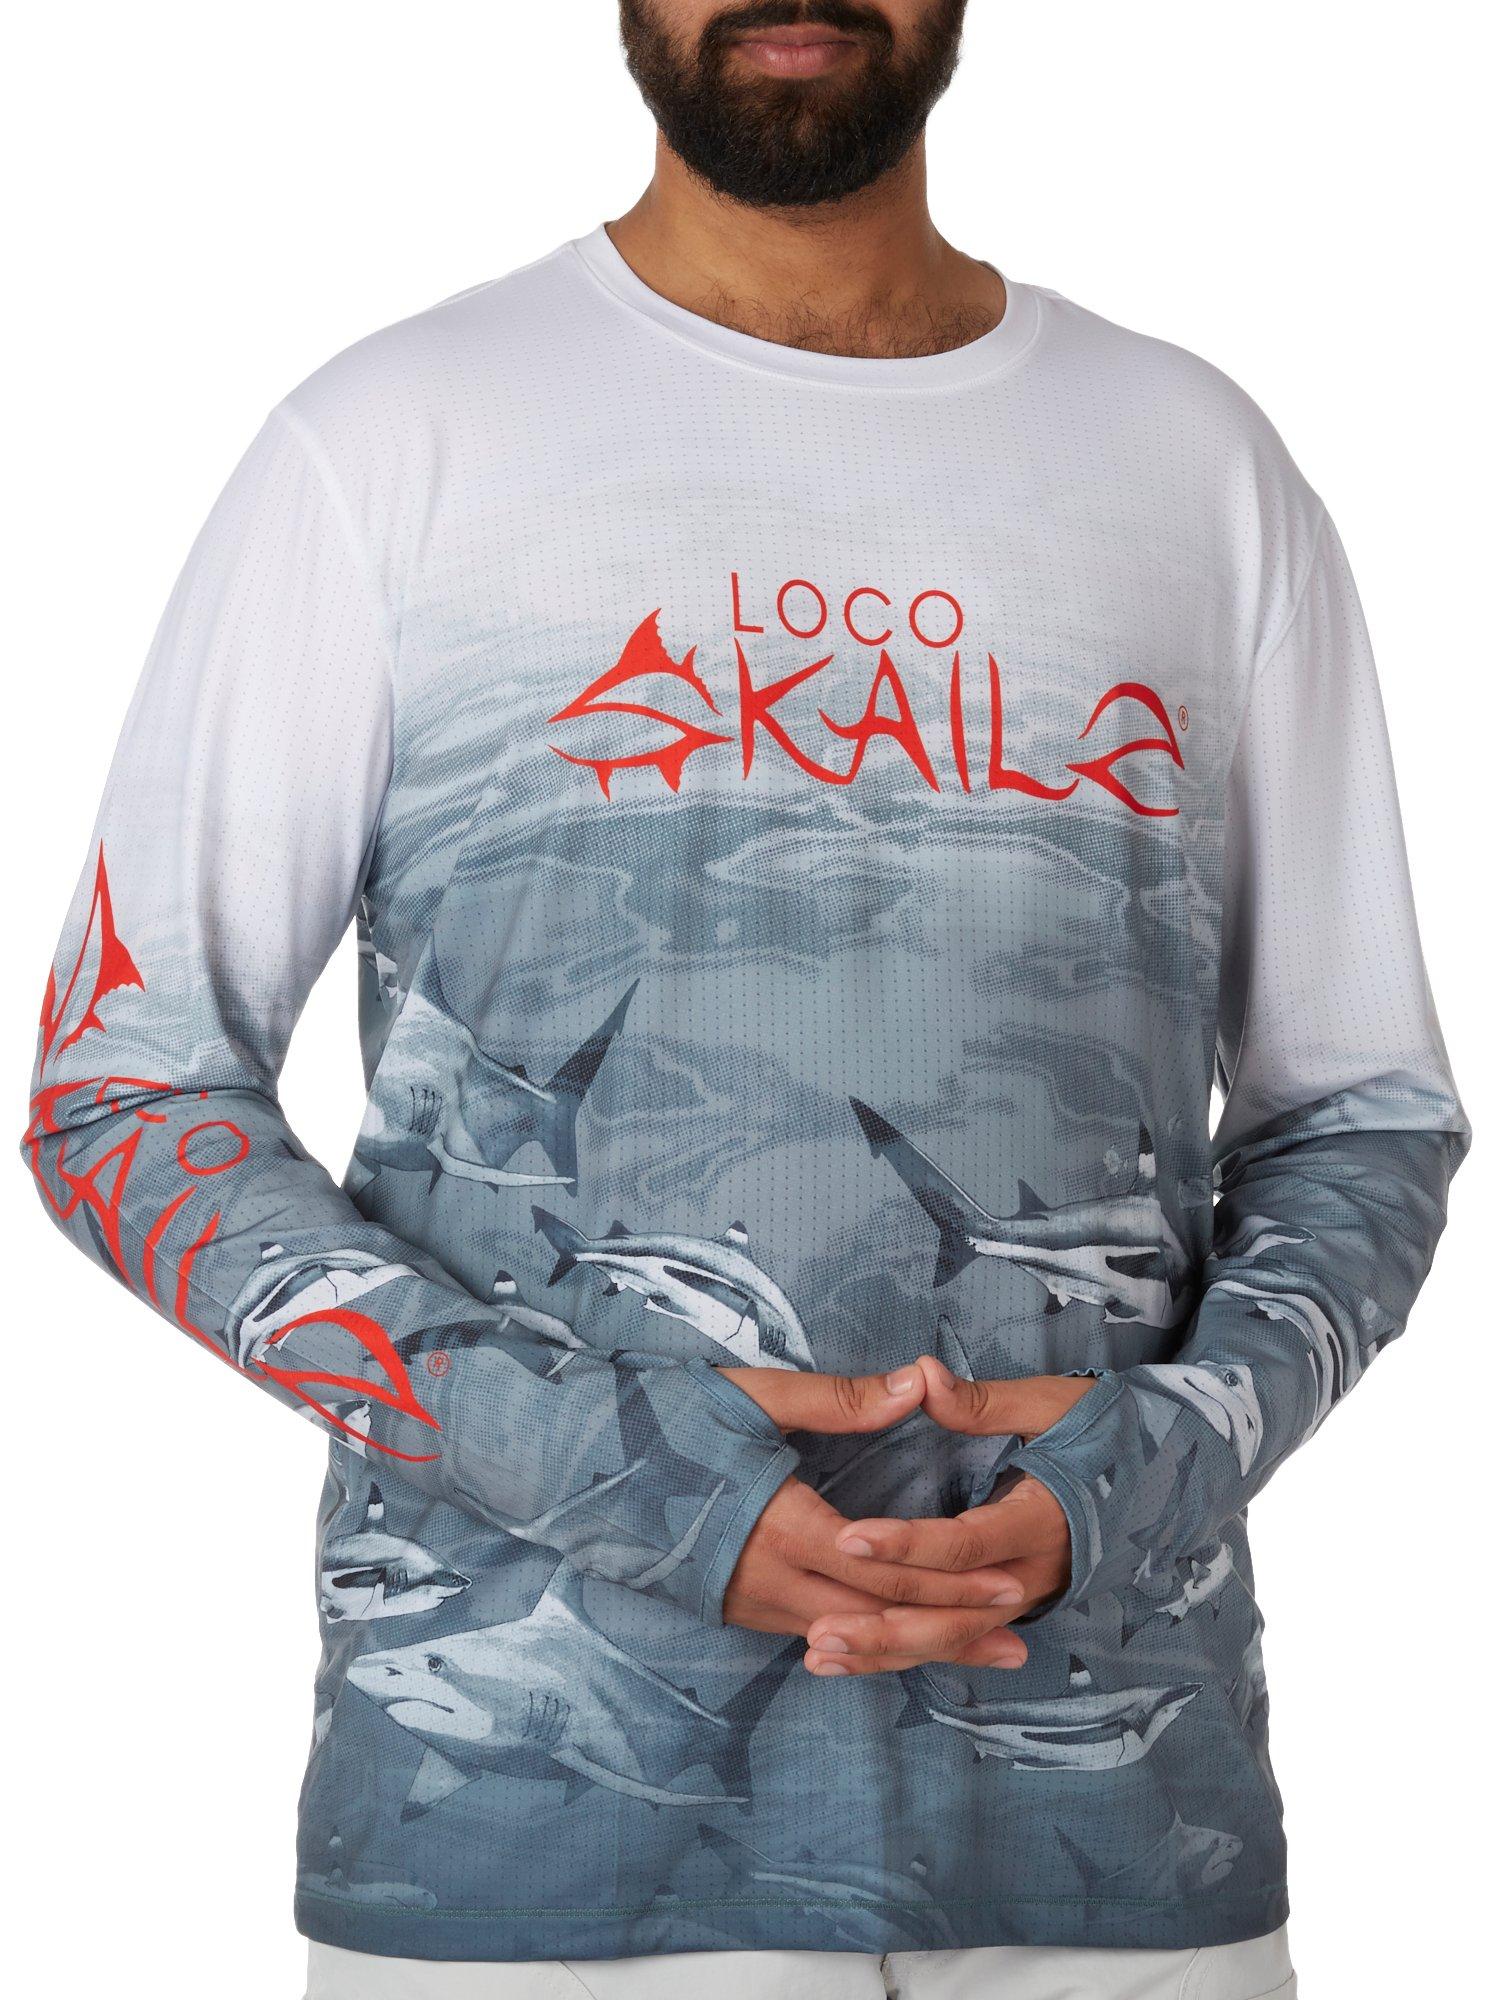 Loco Skailz Mens Sharks Savage Long Sleeve T-Shirt